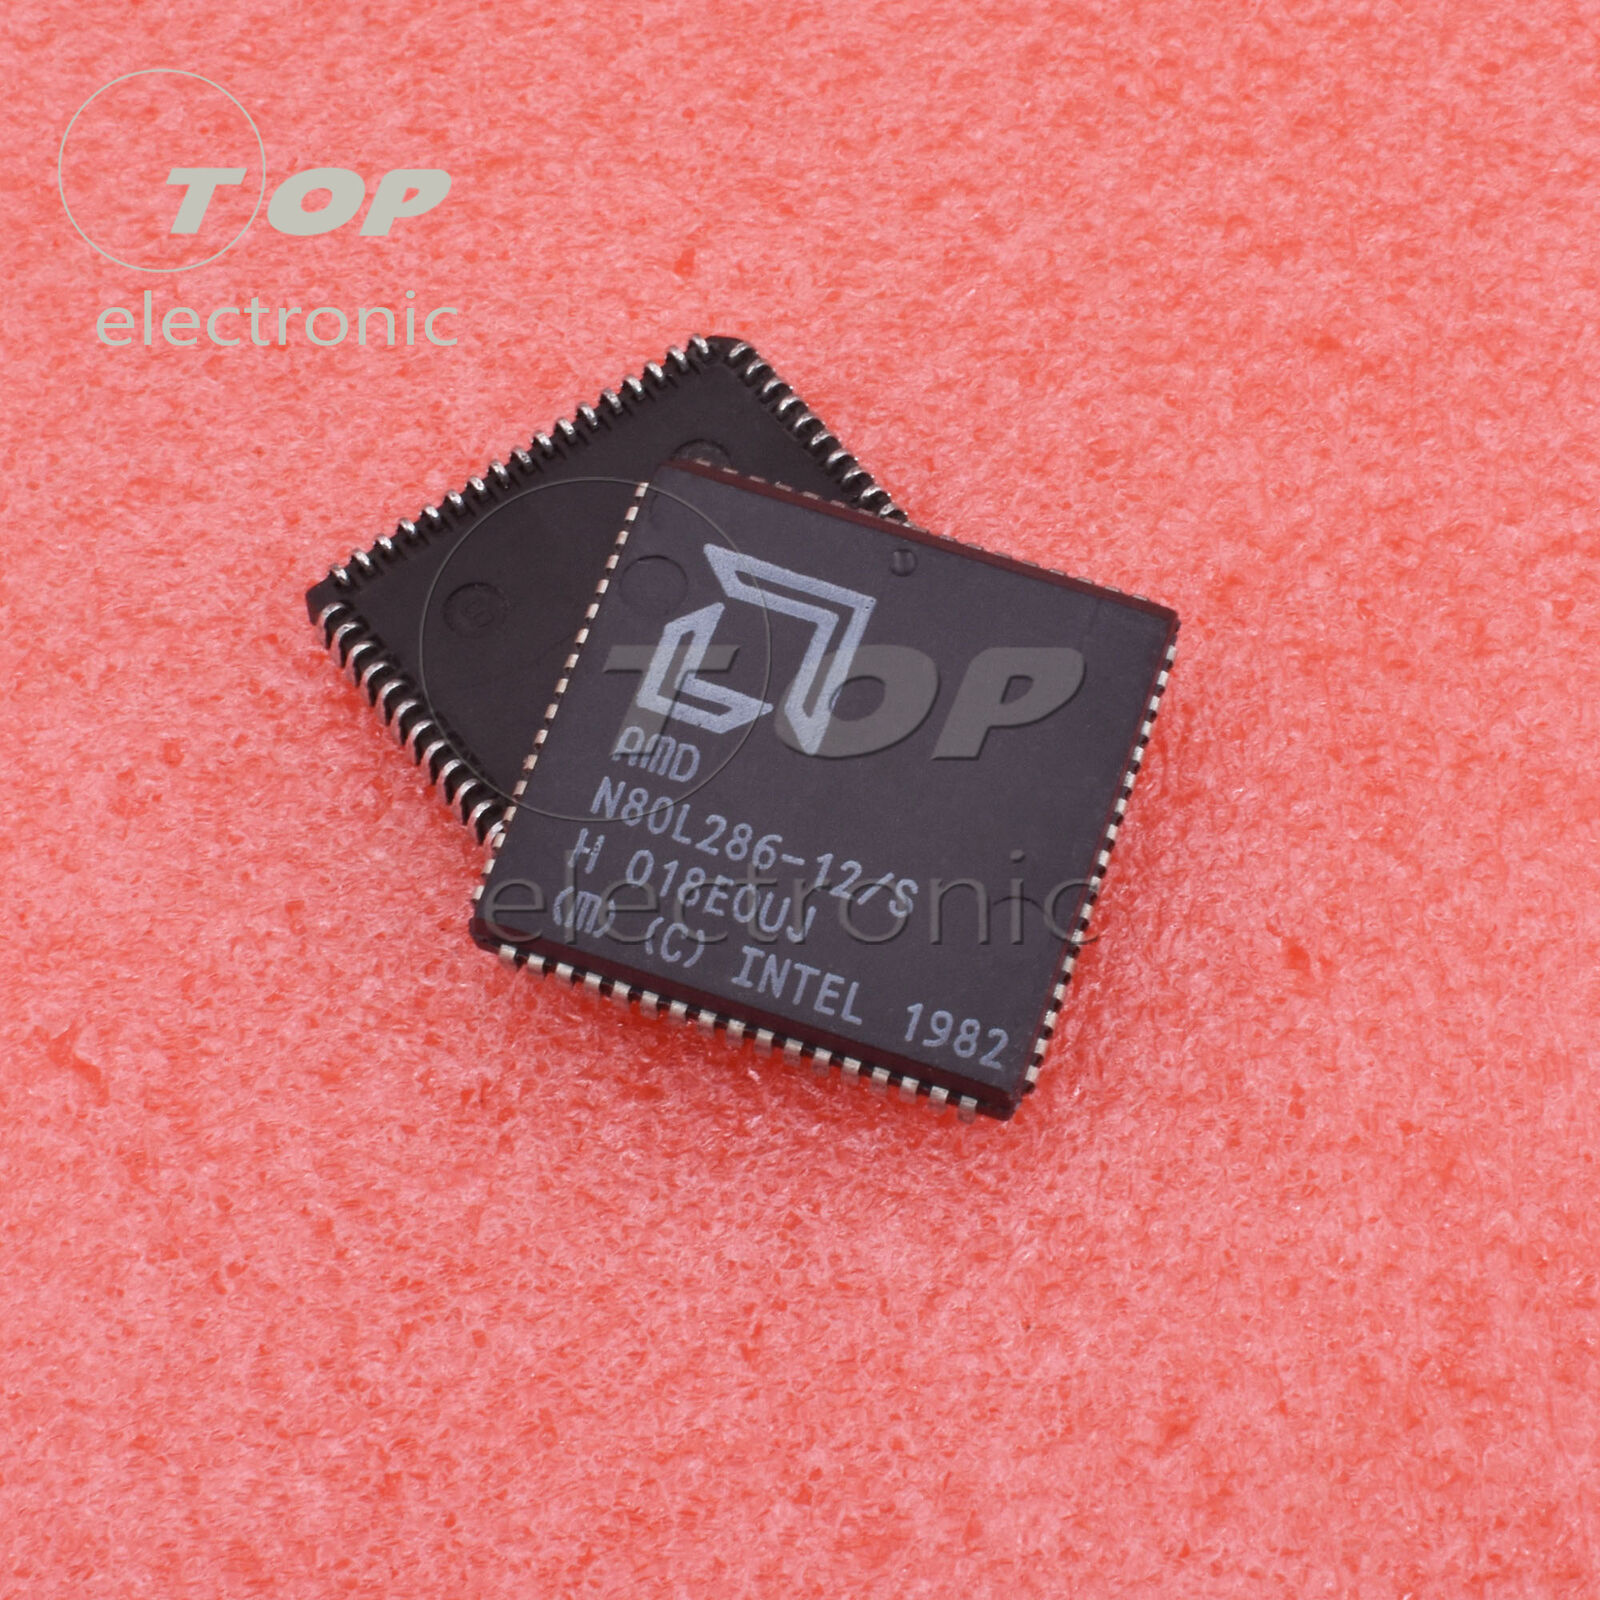 1/5PCS N80L286-12/S PLCC68 N80L286-12 N80L286 16-Bit Microprocessor NEW IC